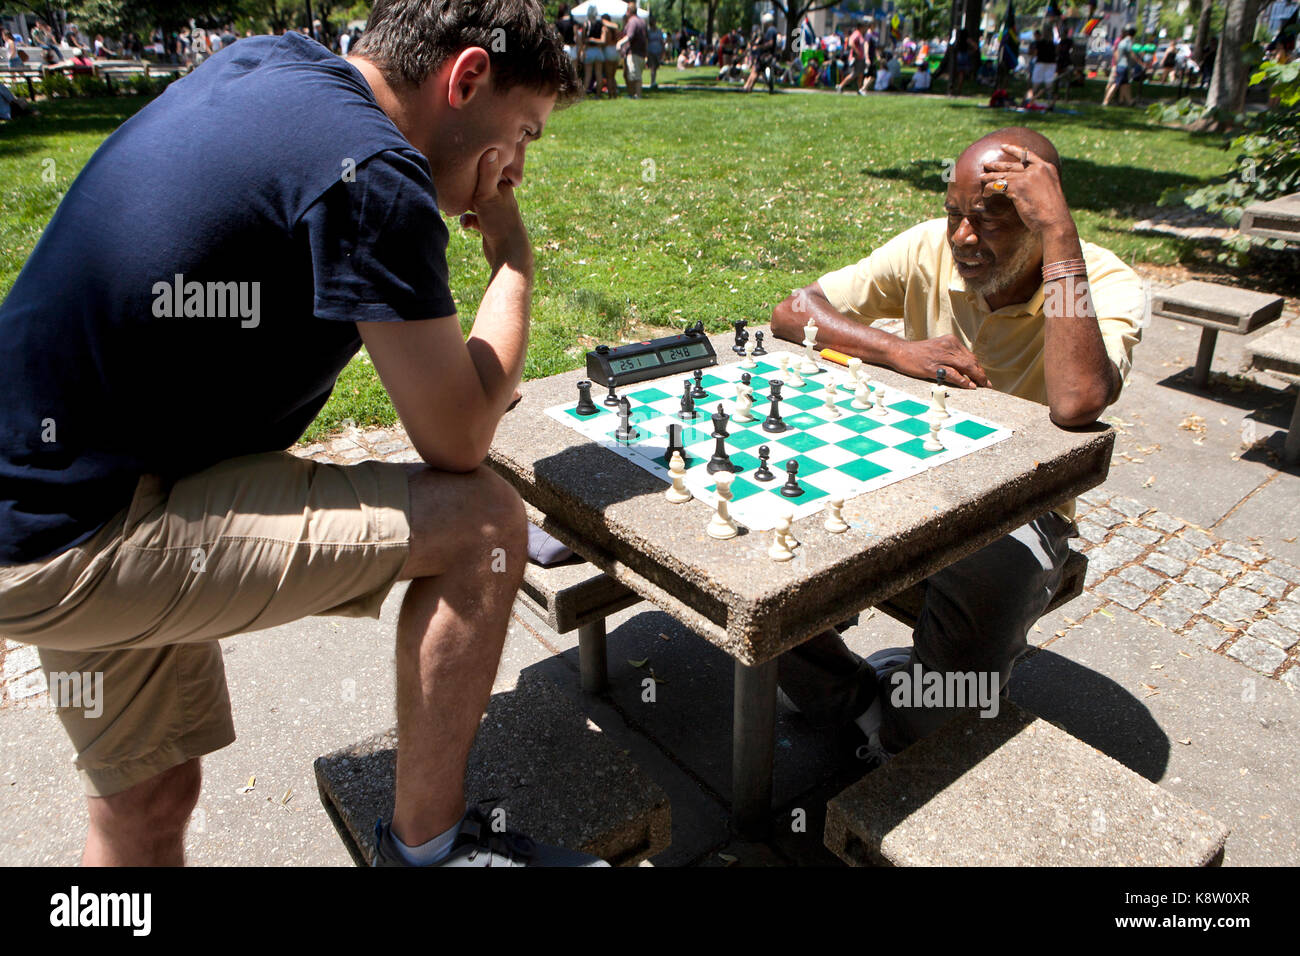 Les hommes jouant aux échecs en plein air dans un parc à Dupont Circle - Washington, DC USA Banque D'Images